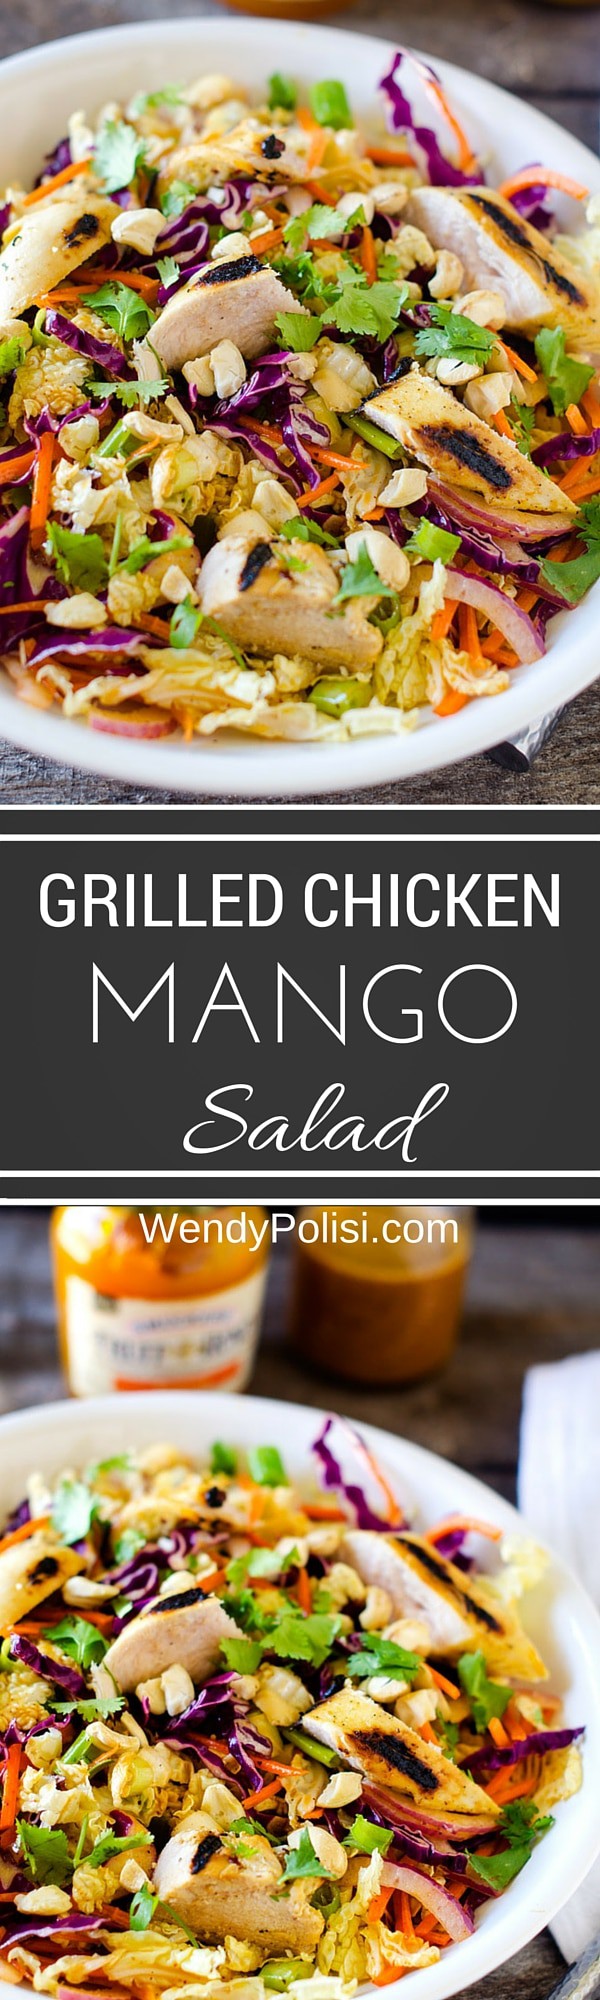 Grilled Chicken Mango Salad